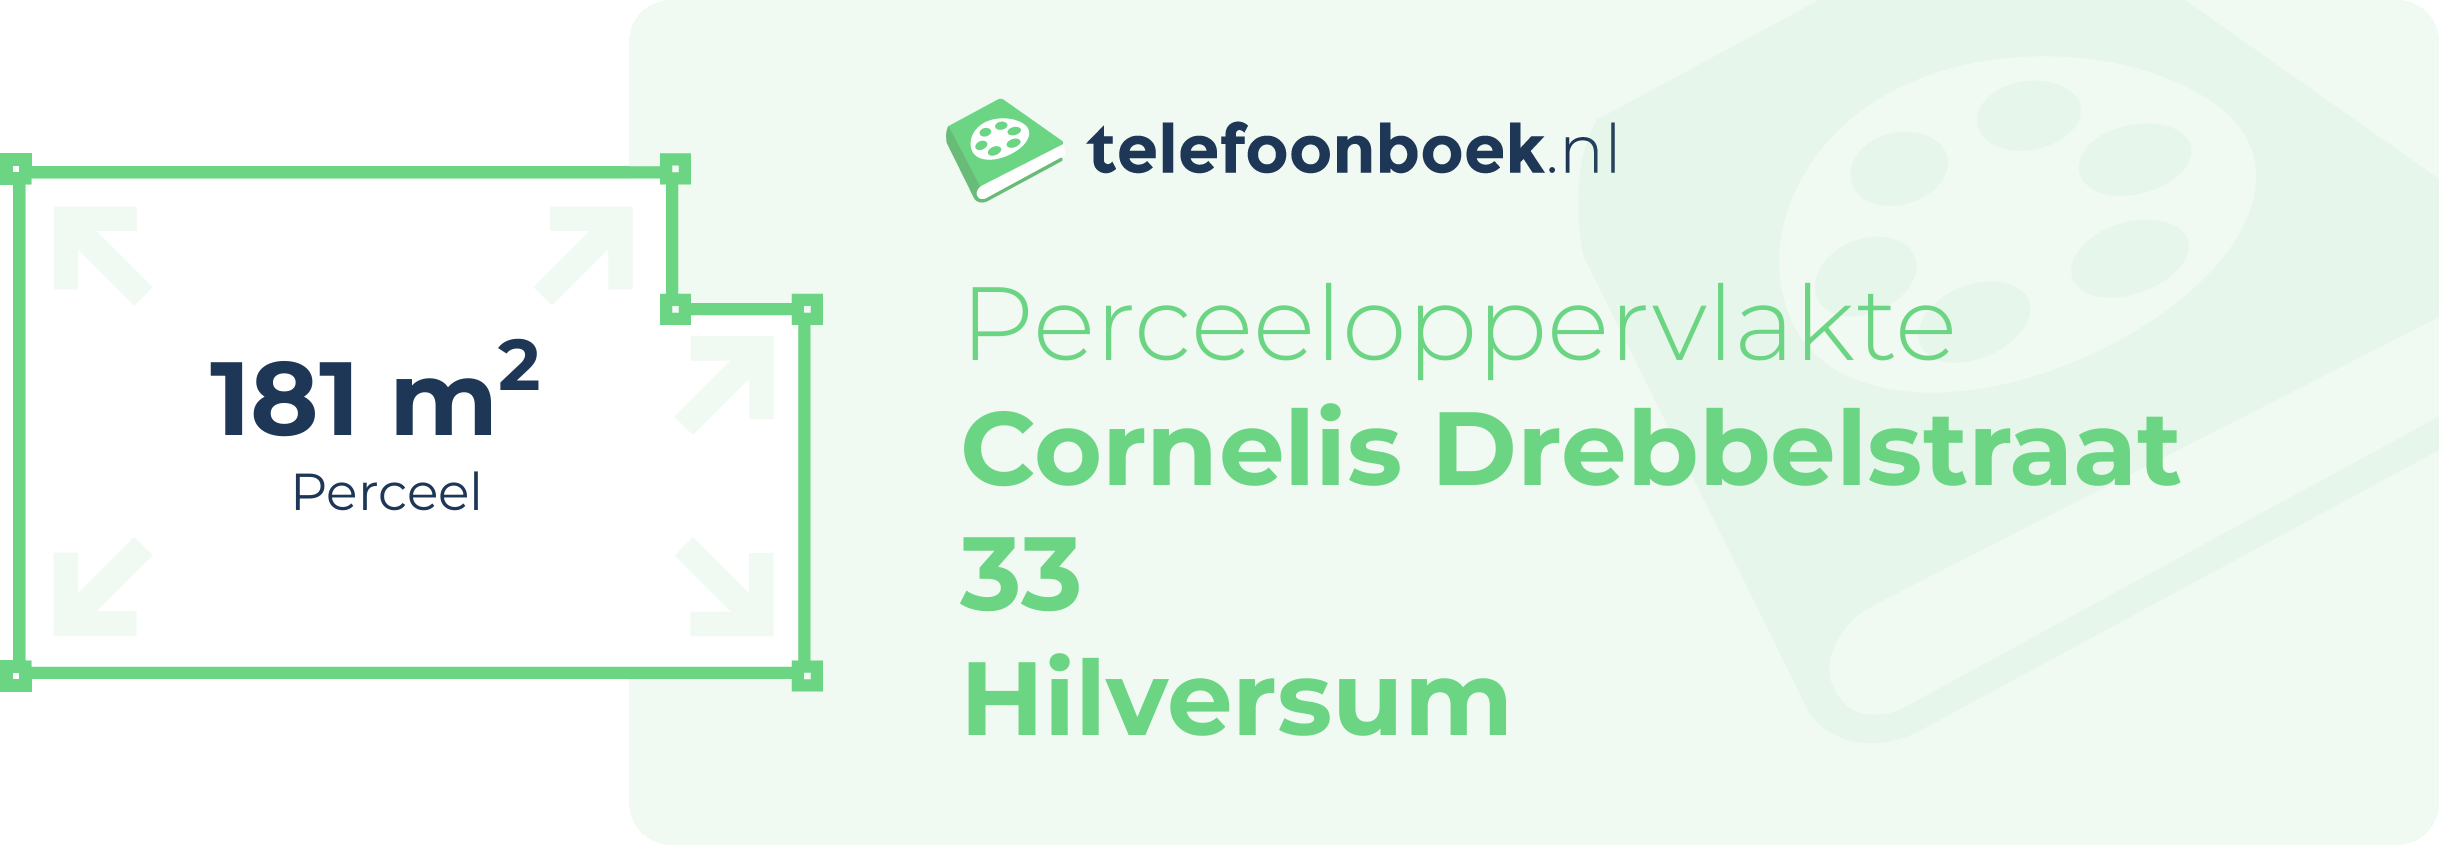 Perceeloppervlakte Cornelis Drebbelstraat 33 Hilversum